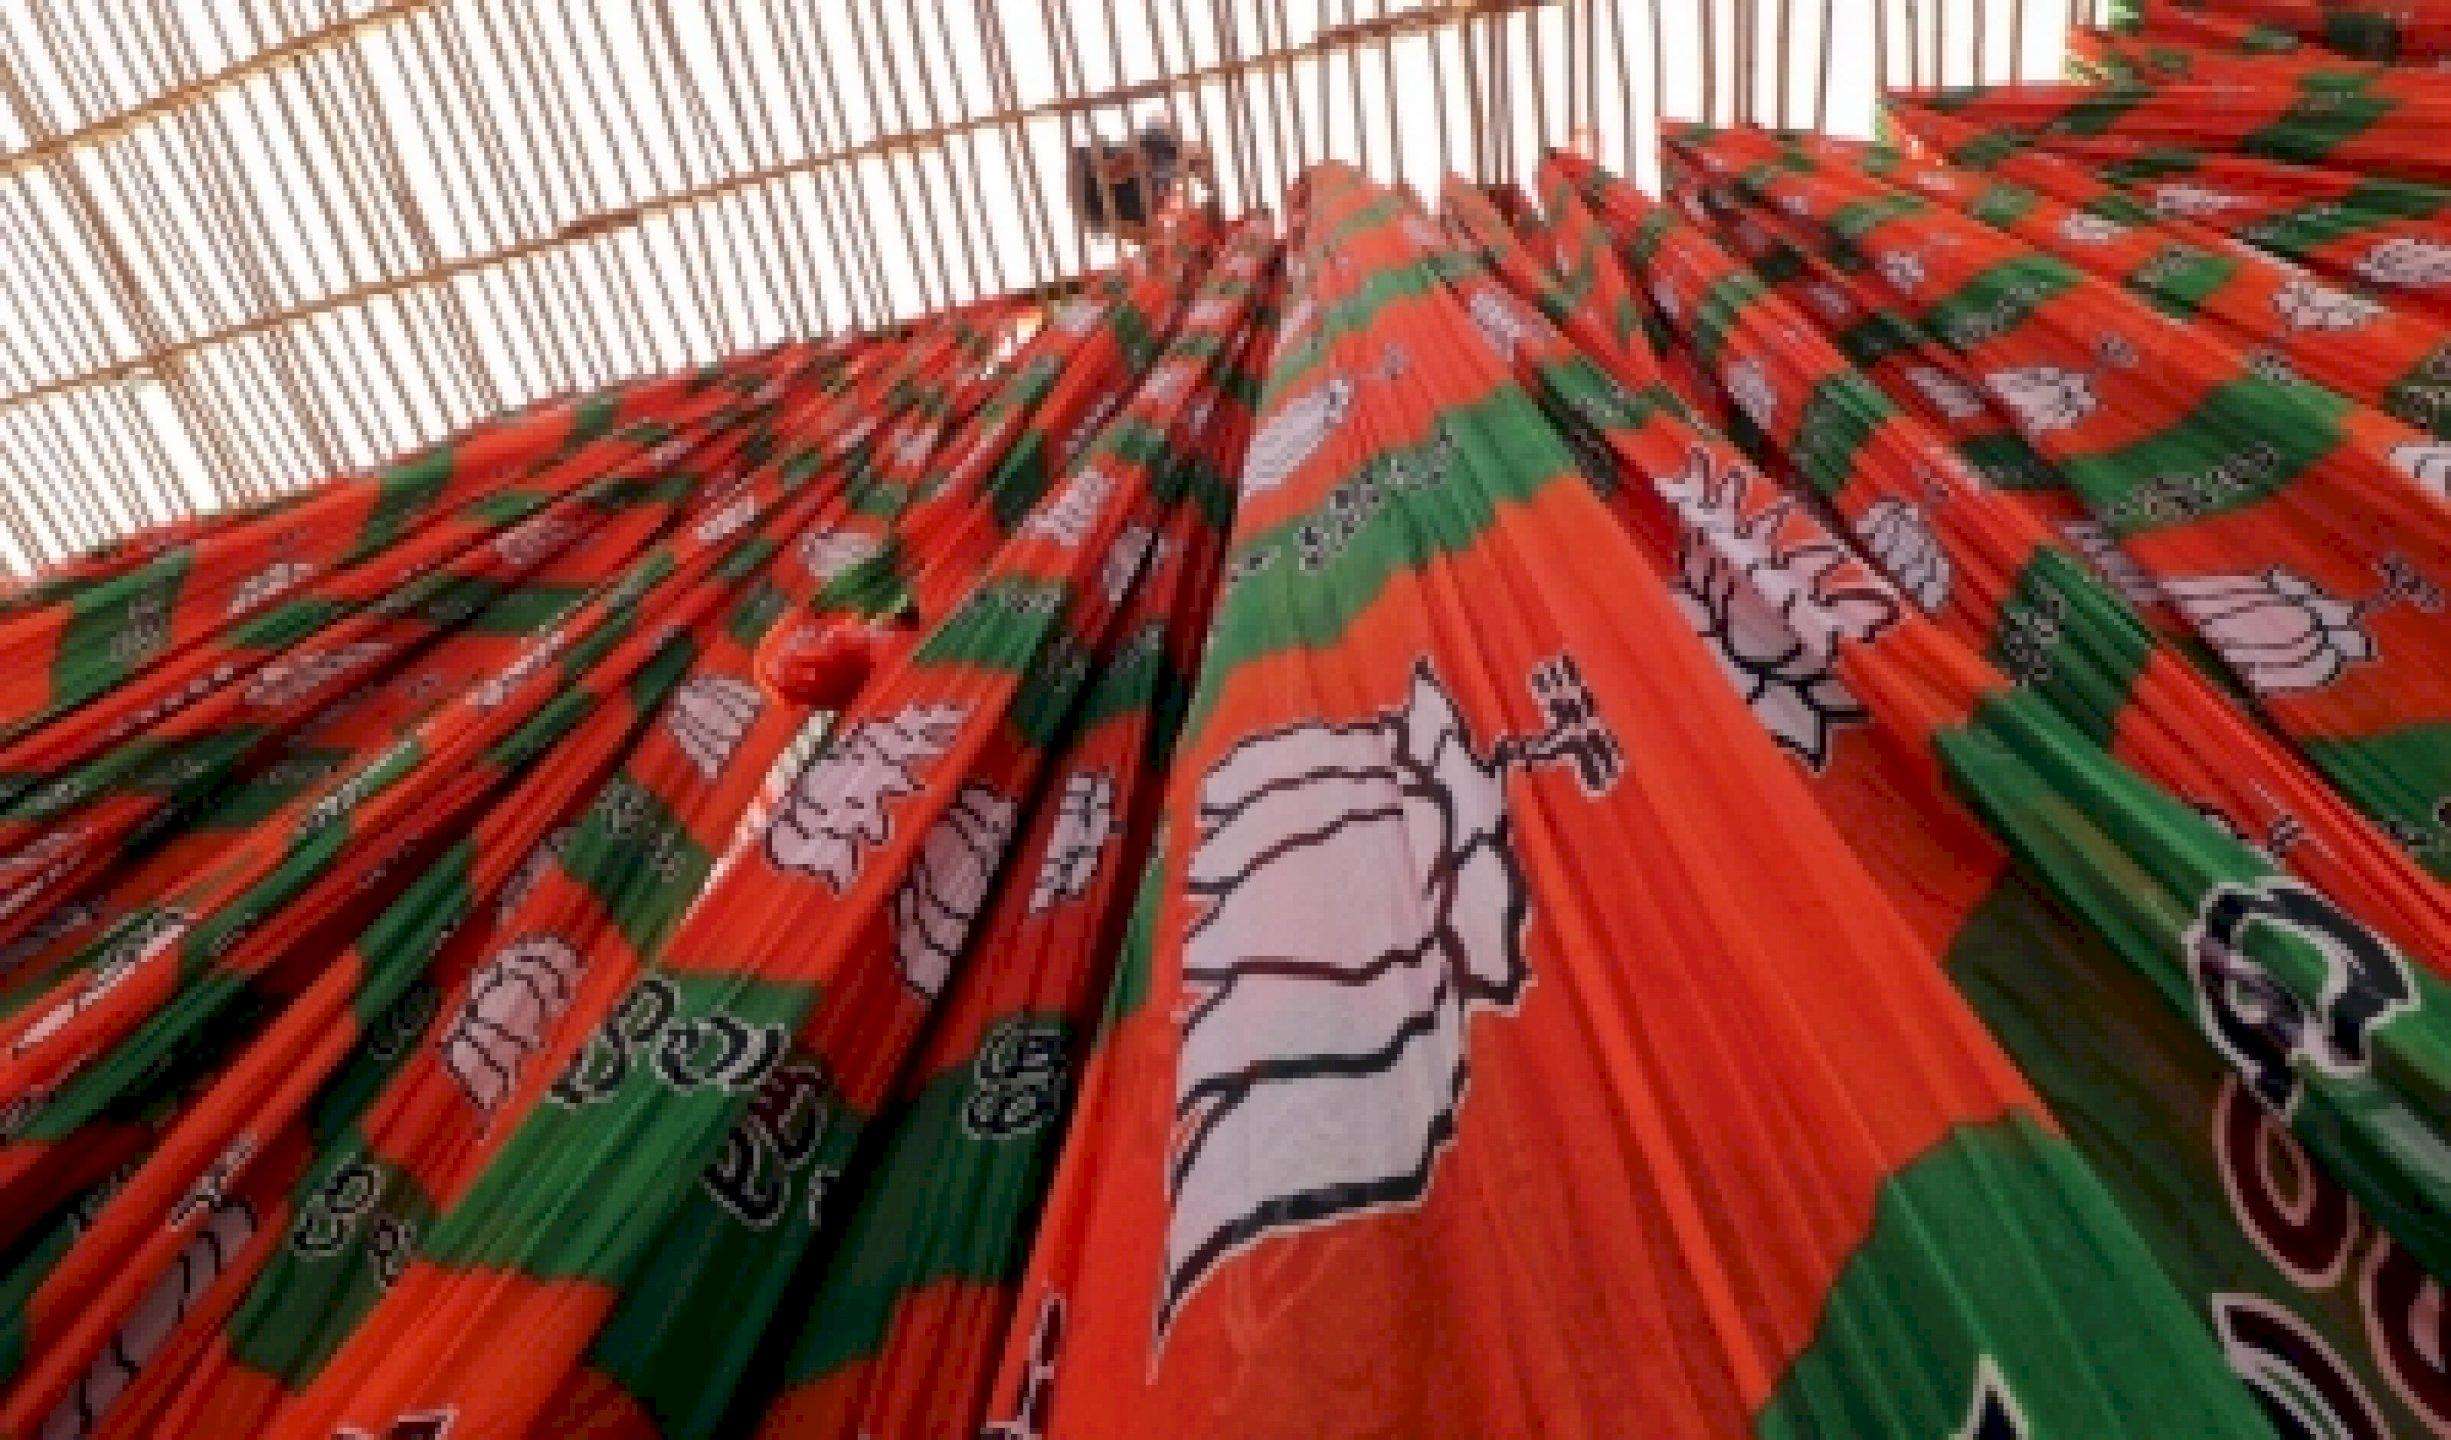 वामपंथी दलों की बी टीम बनकर चुनाव लड़ रही राजद : BJP